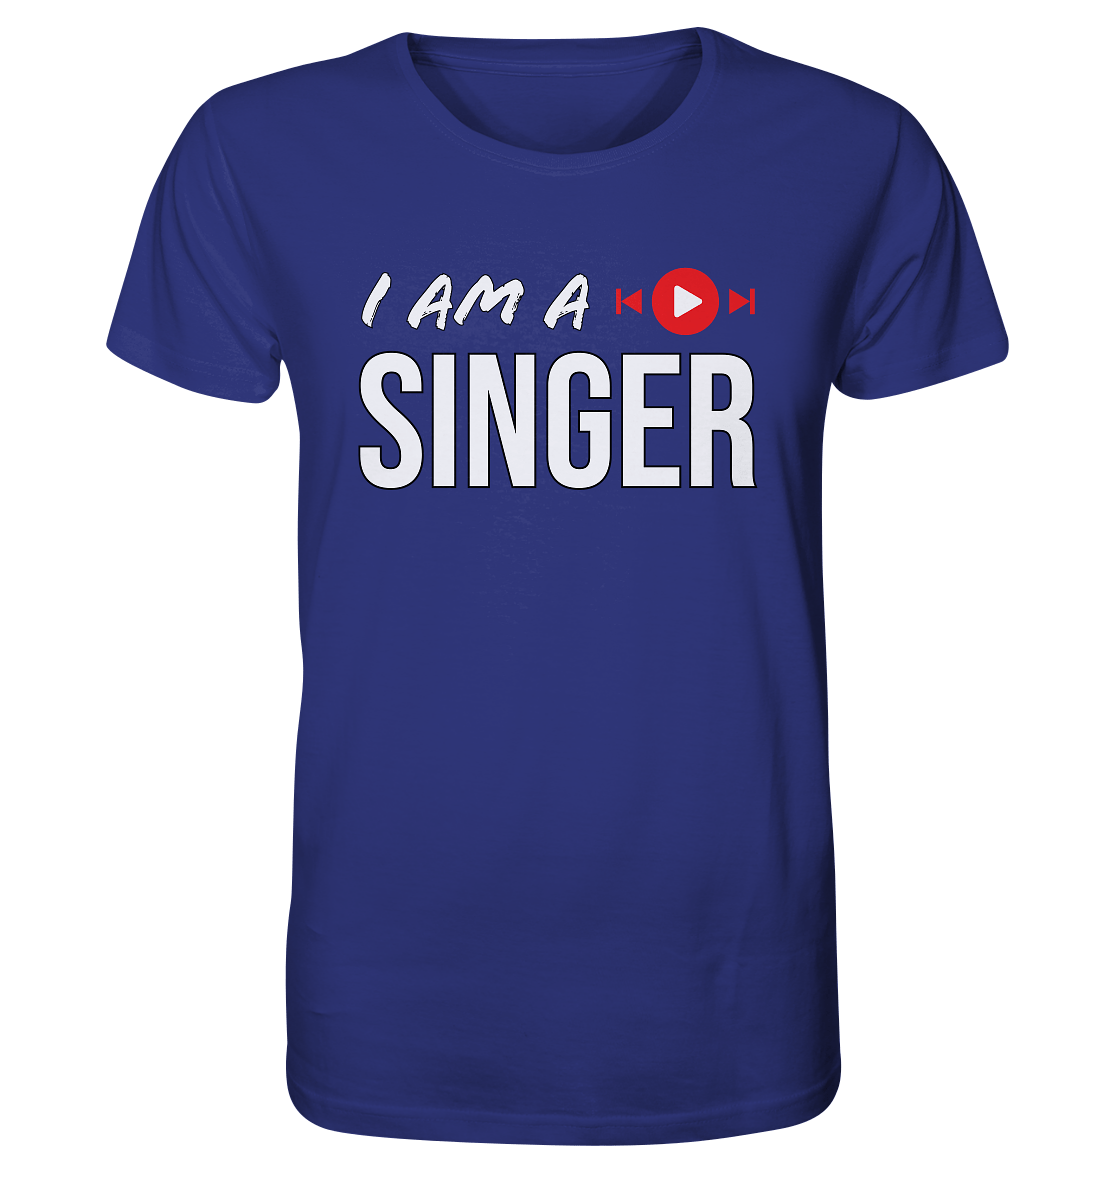 I AM A SINGER - Organic Shirt - HalloGeschenk.de #geschenkideen# #personalisiert# #geschenk#